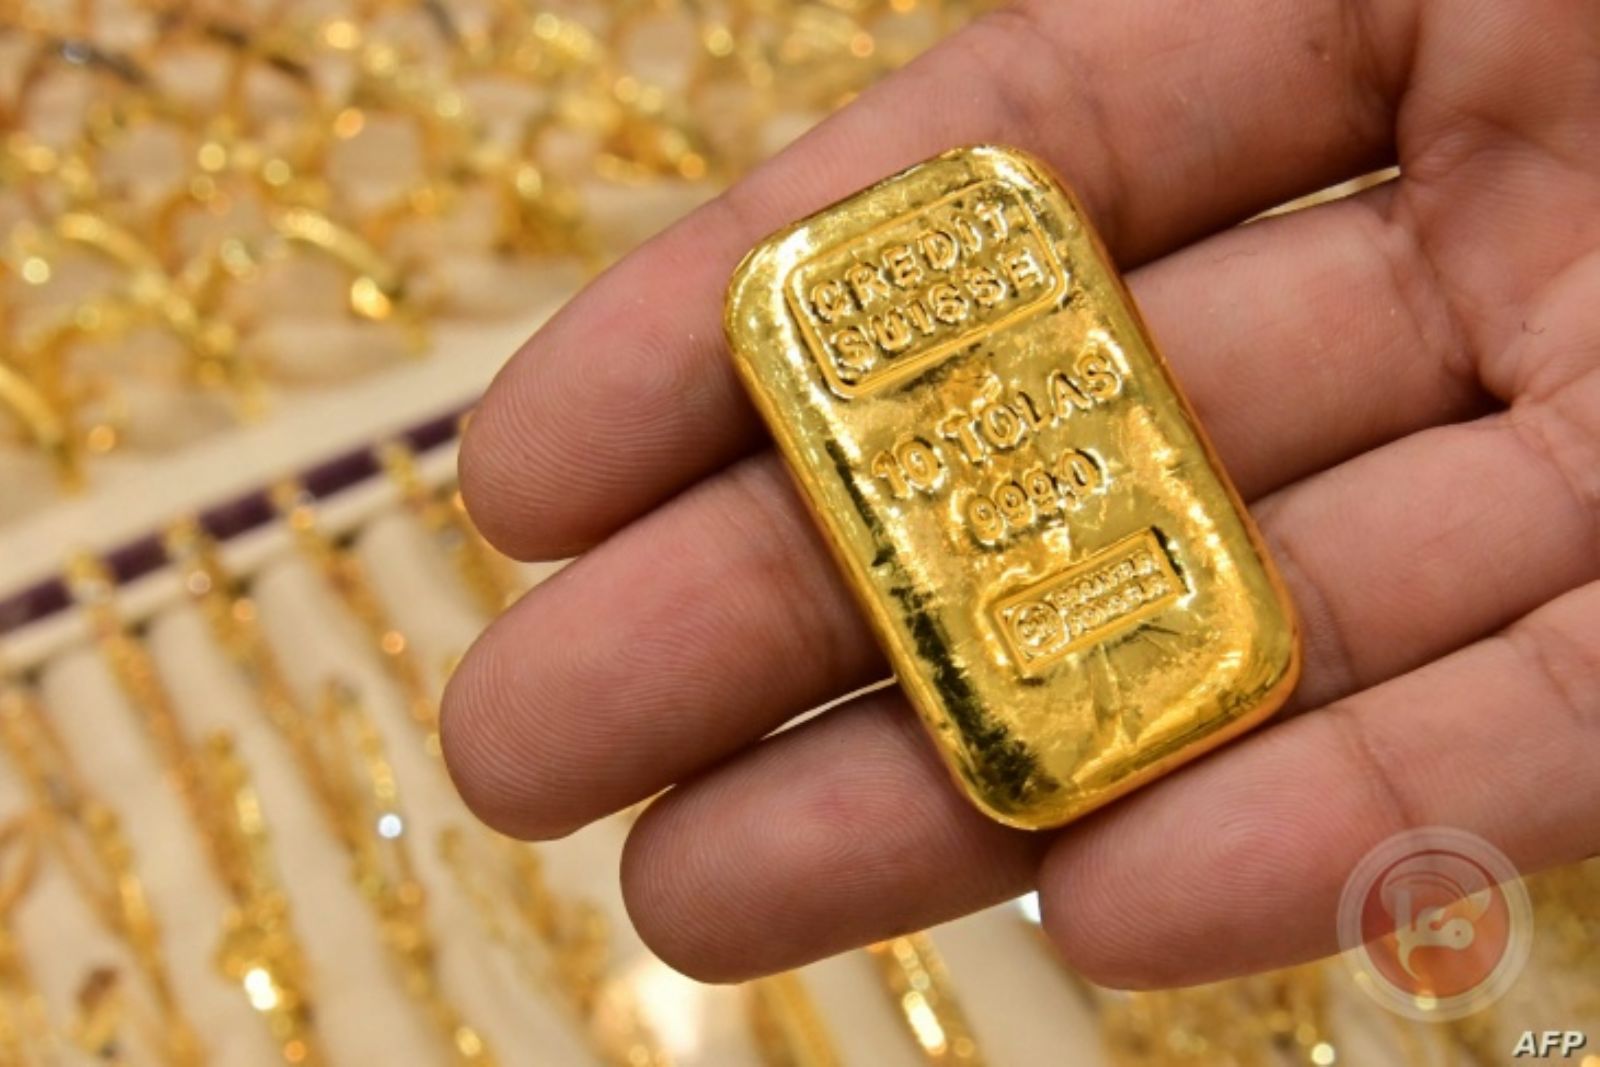 انخفاض سعر الذهب عالميا